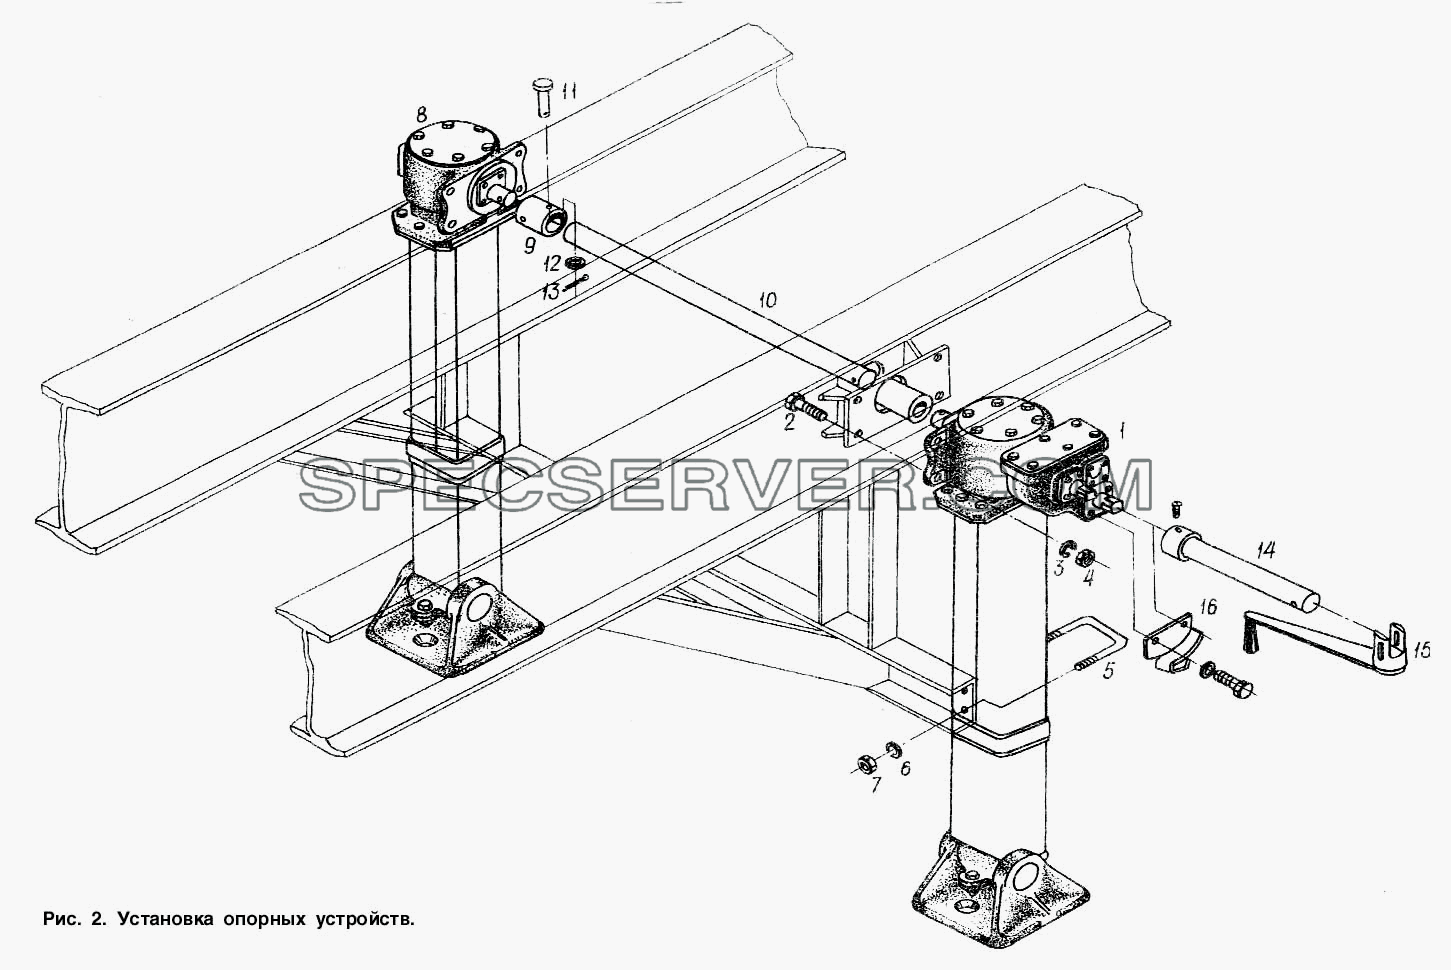 Установка опорных устройств для МАЗ-93802 (список запасных частей)